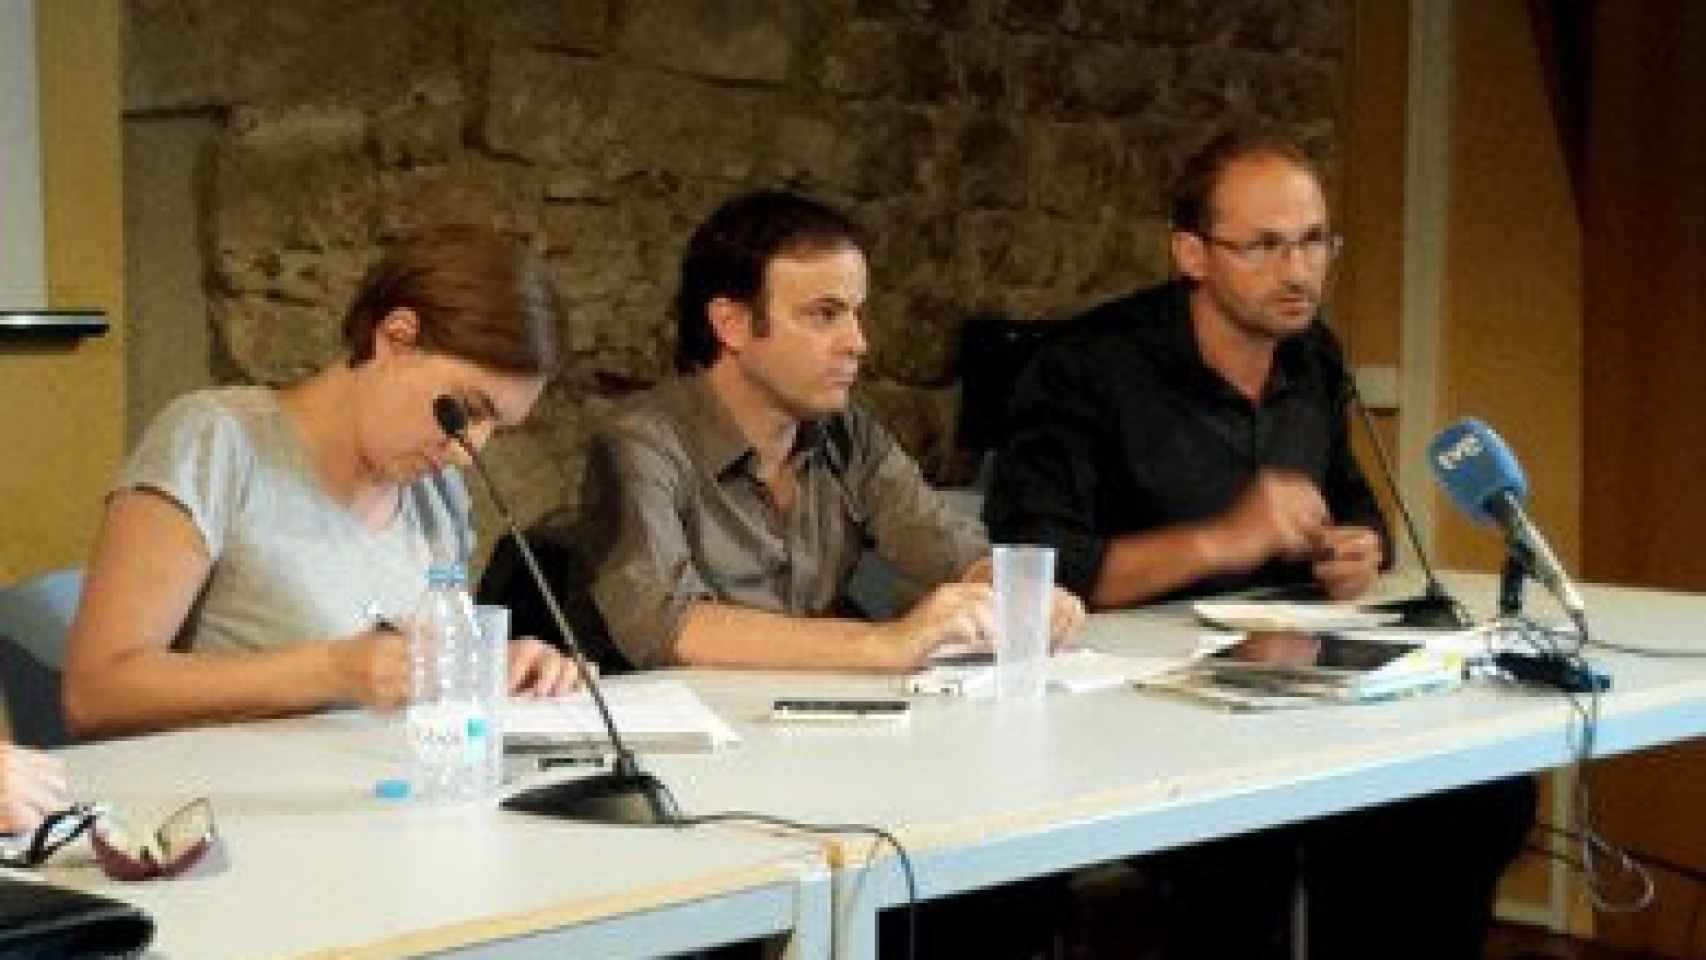 Los líderes de Guanyem, Ada Colau, e ICV-EUiA, Joan Herrera, flanqueando al abogado Jaume Asens, durante la presentación de la querella de ambas formaciones y Podemos contra Jordi Pujol, en septiembre de 2014.